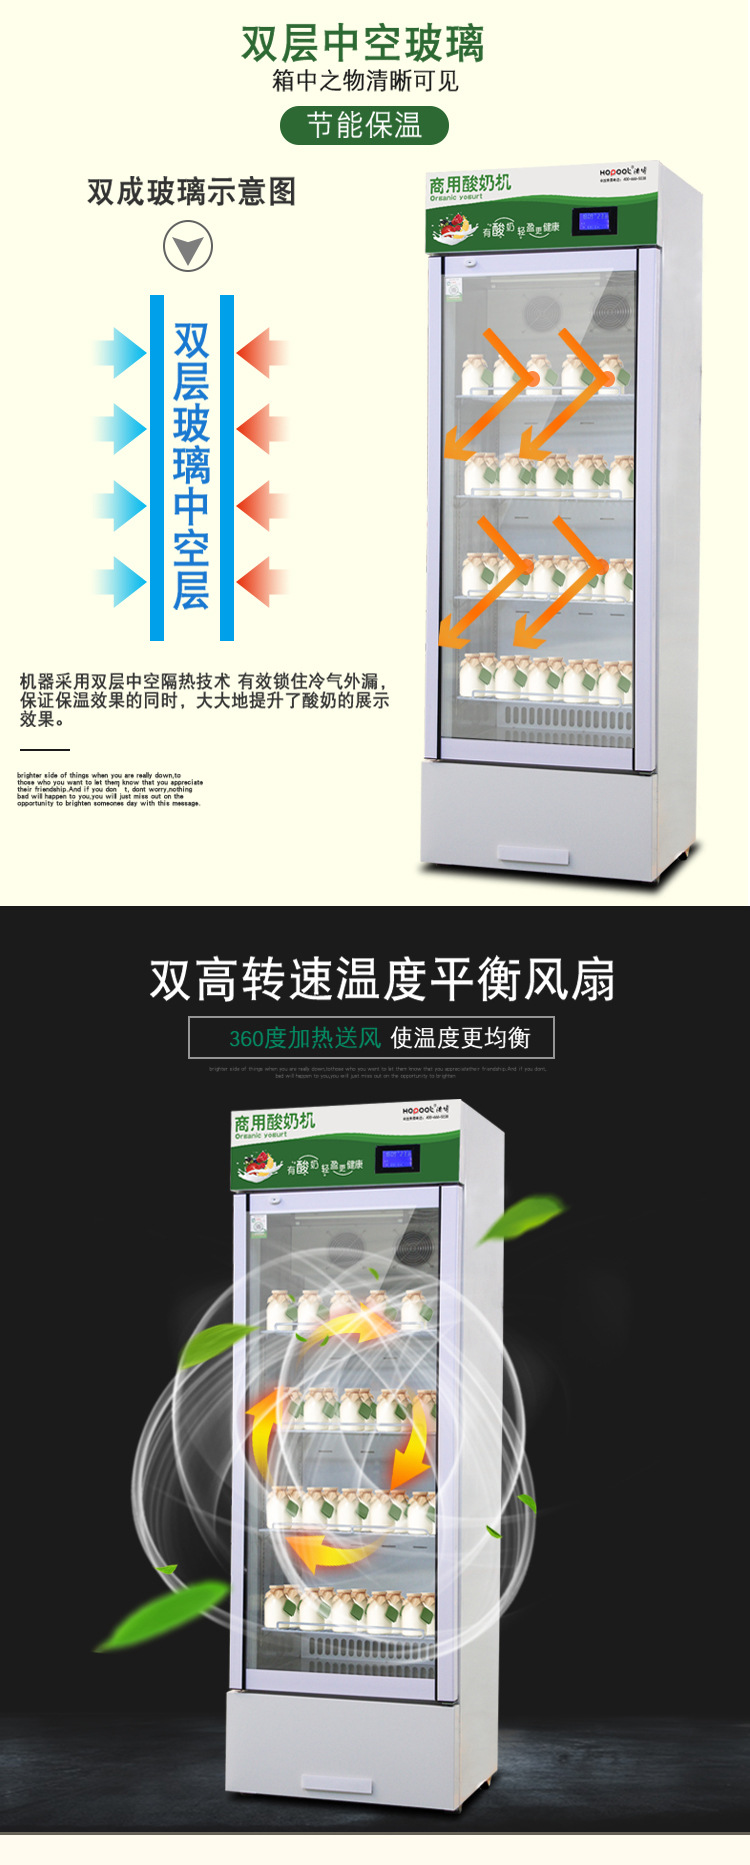 浩博商用酸奶机 杀菌发酵冷藏机 全自动商用酸奶机 水果捞设备示例图7